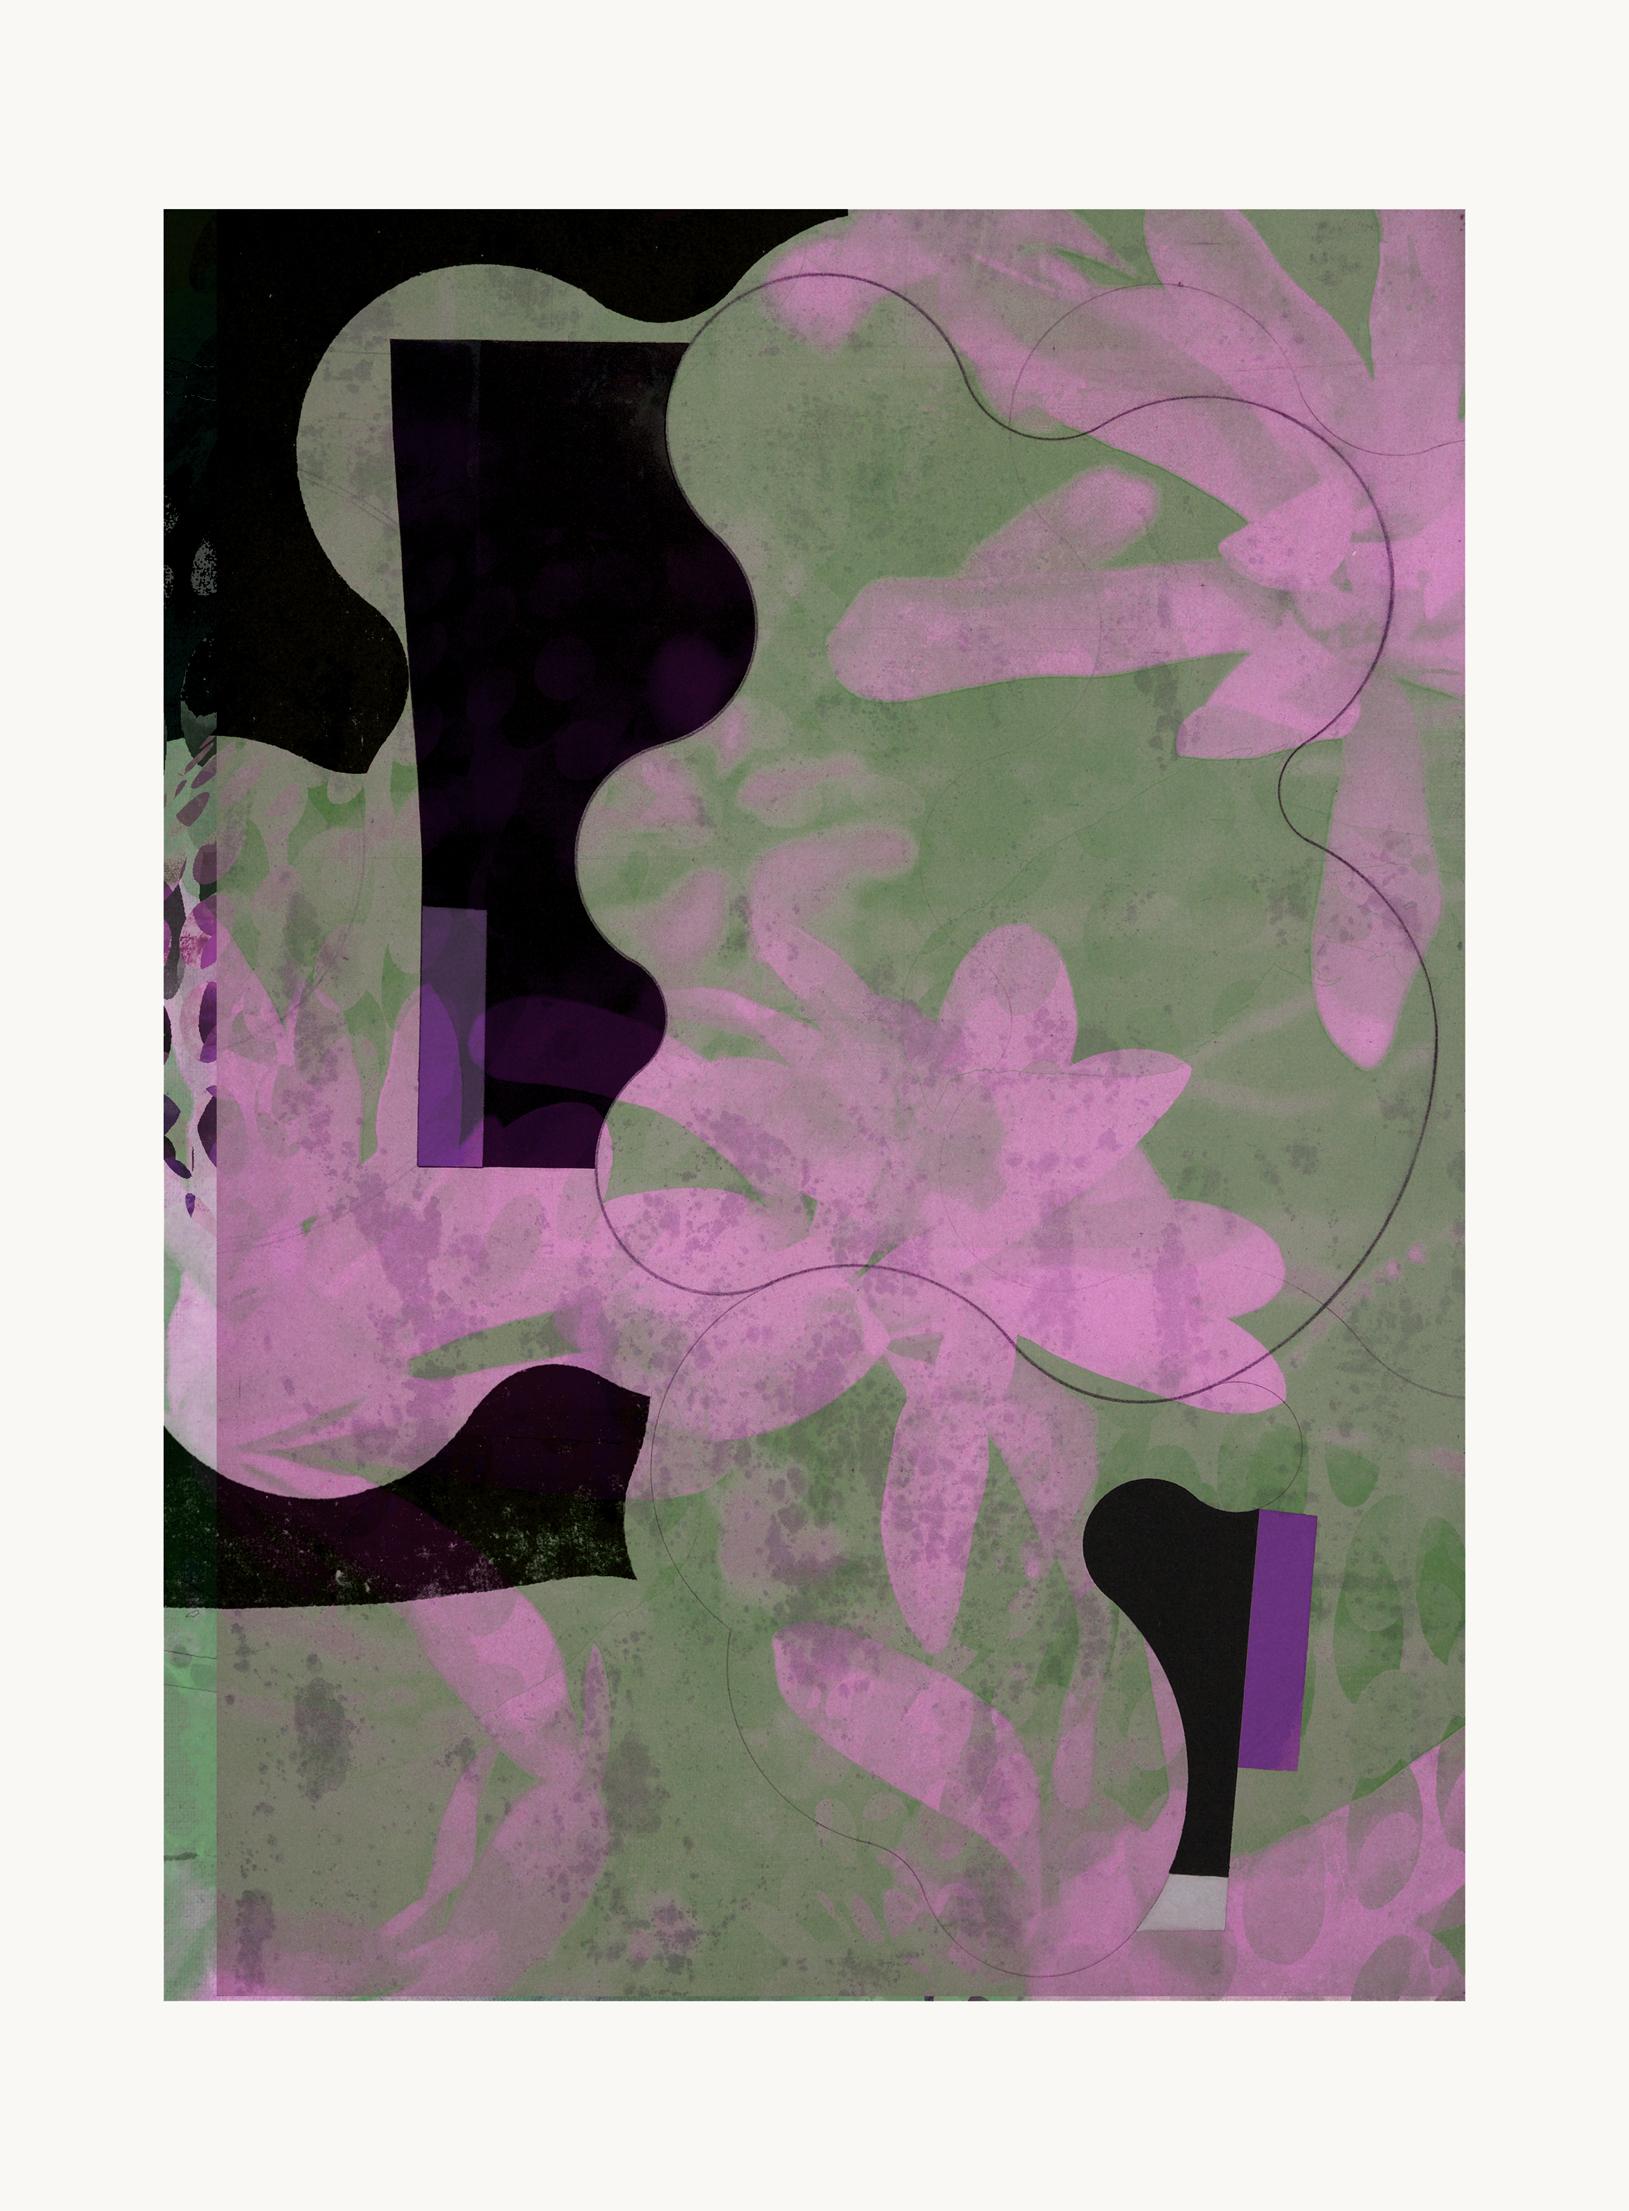 flower0-Contemporary , Abstract, Gestual, Street art, Pop art, Modern, Geometric